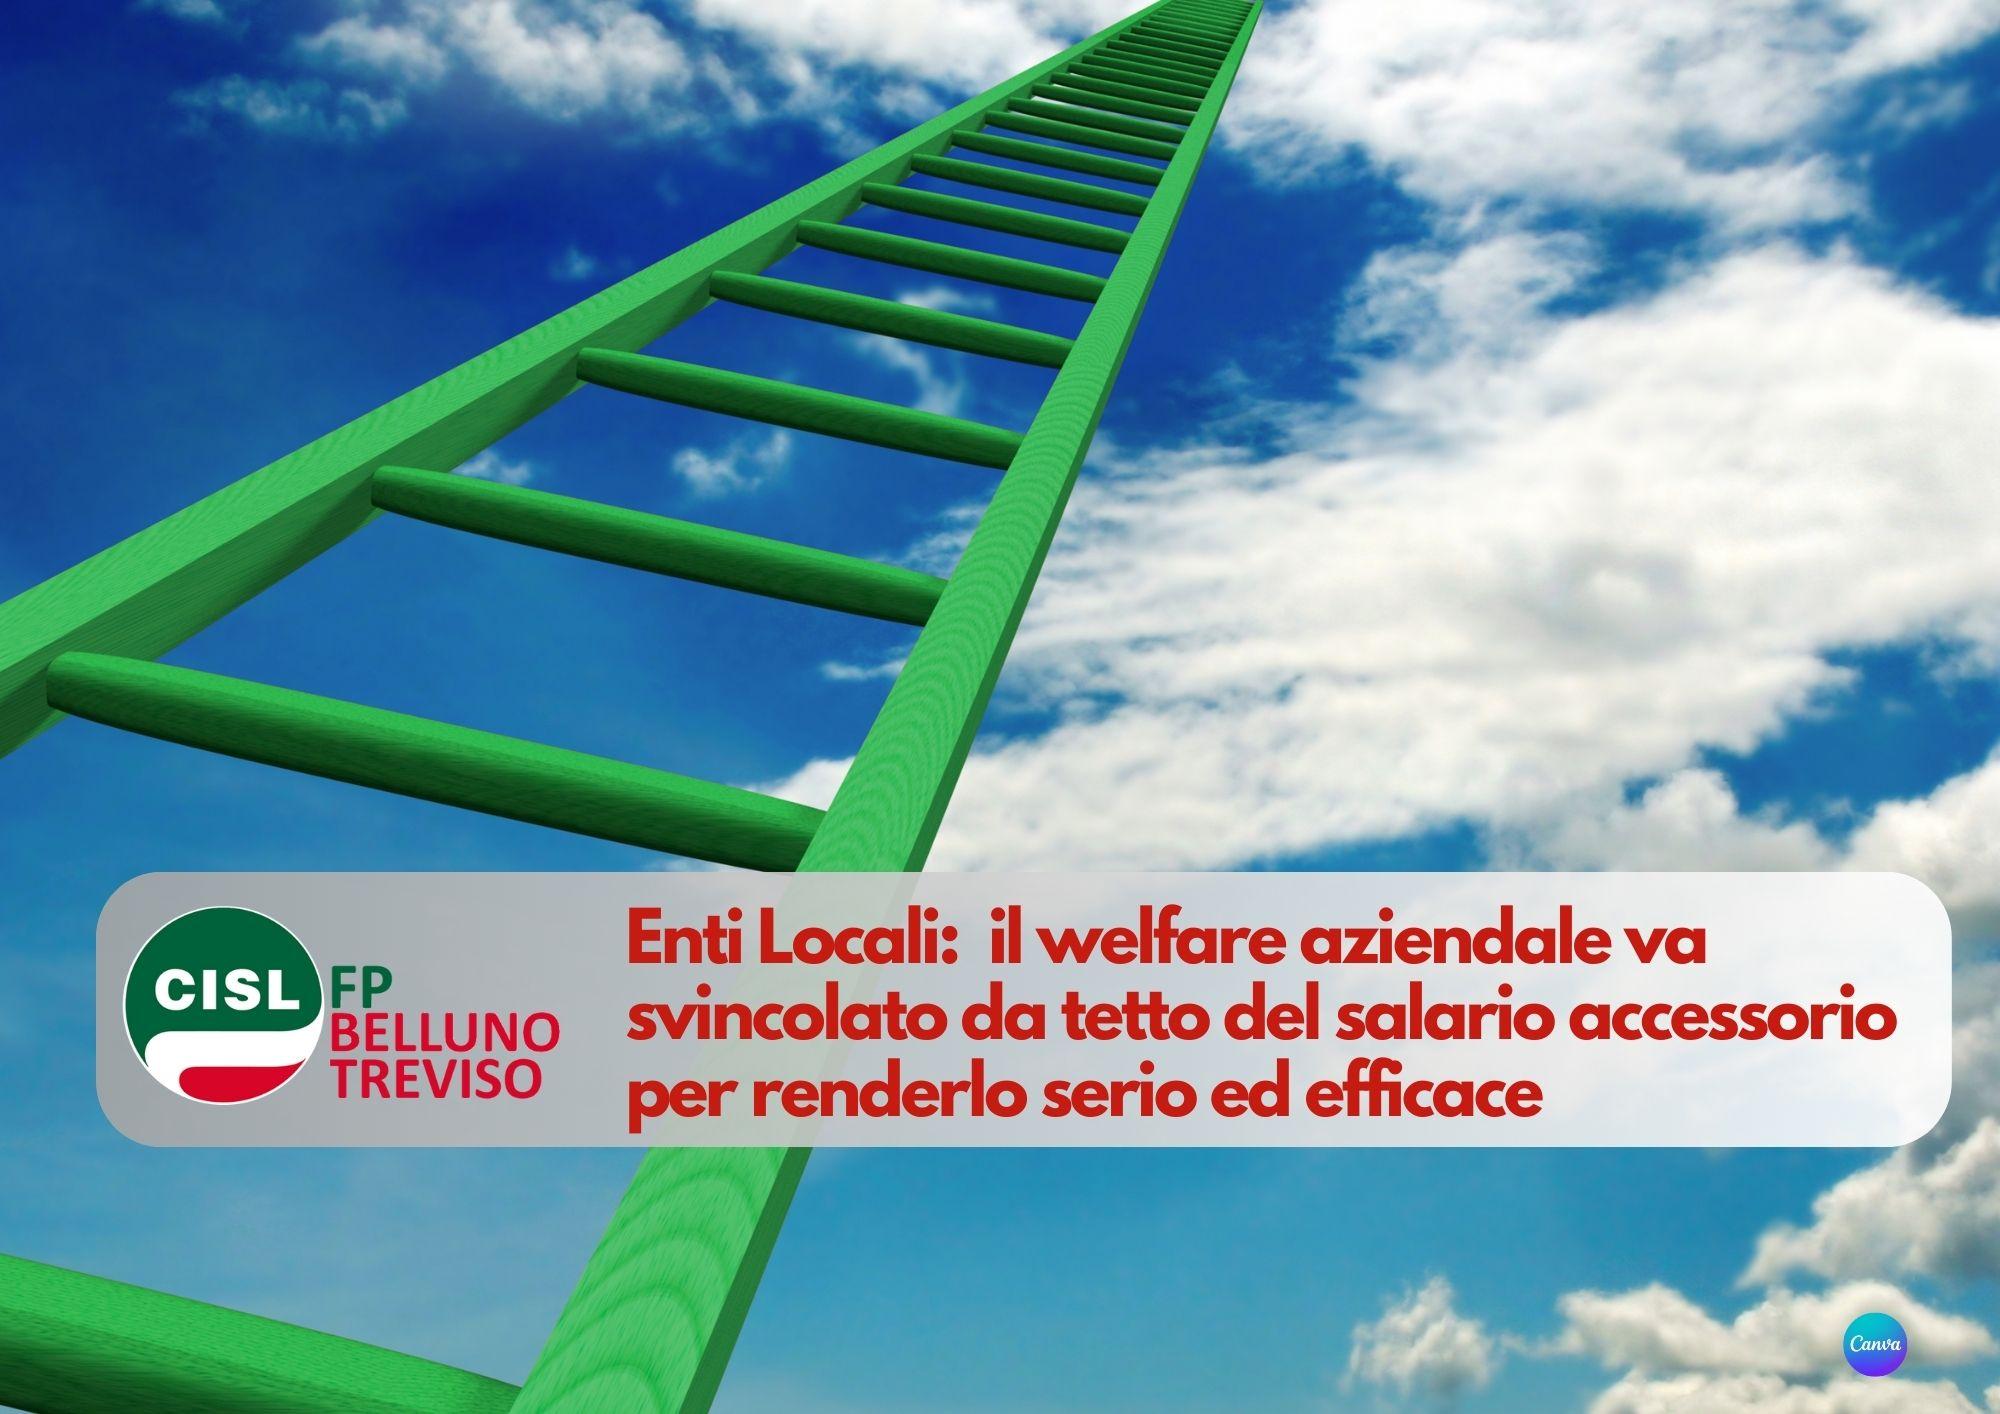 CISL FP Belluno Treviso. Enti Locali: il welfare aziendale va svincolato da tetto del salario accessorio.